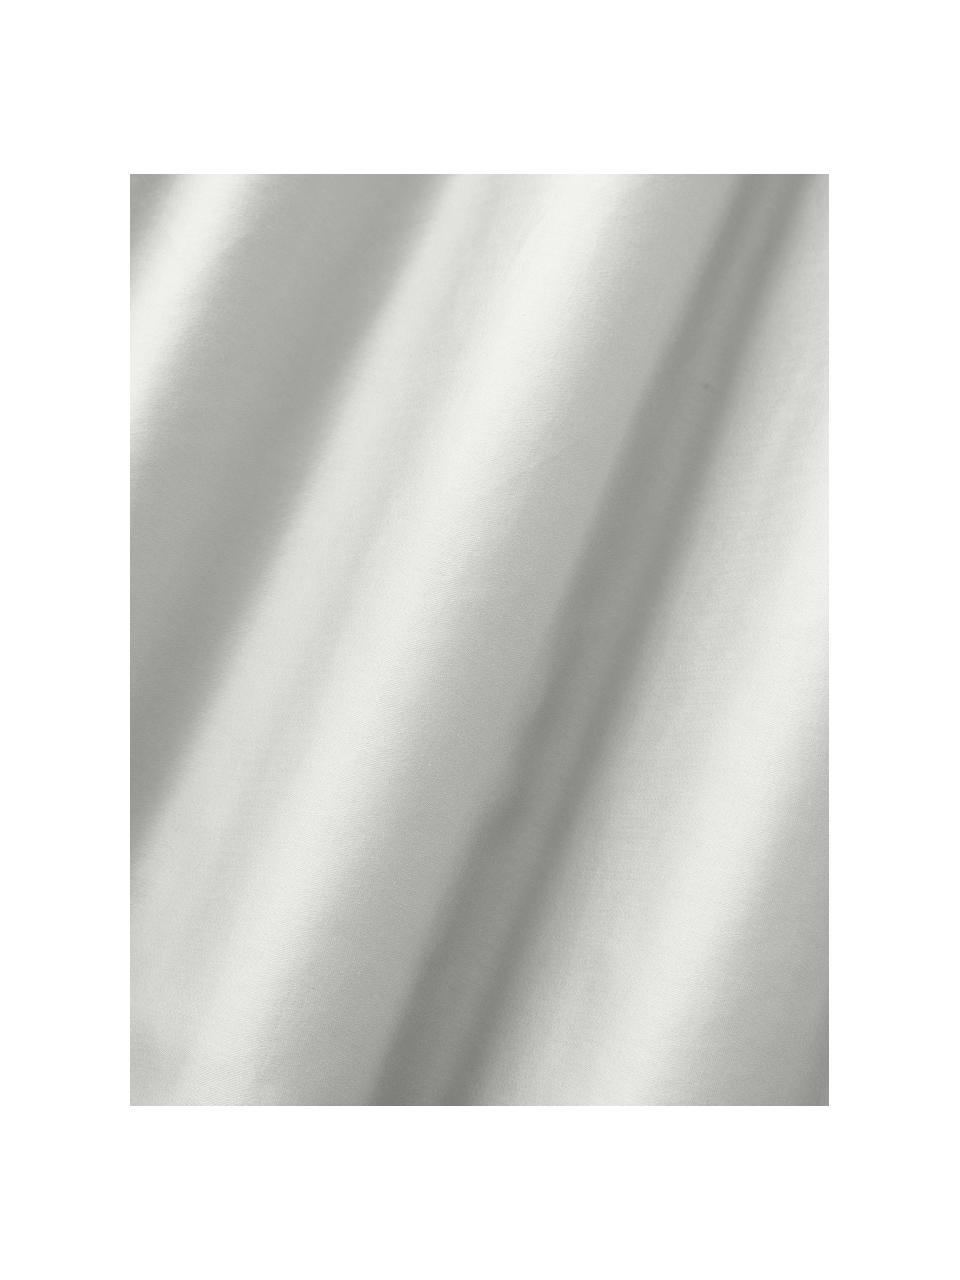 Sábana bajera de satén Comfort, Gris claro, Cama 90 cm (90 x 200 x 35 cm)